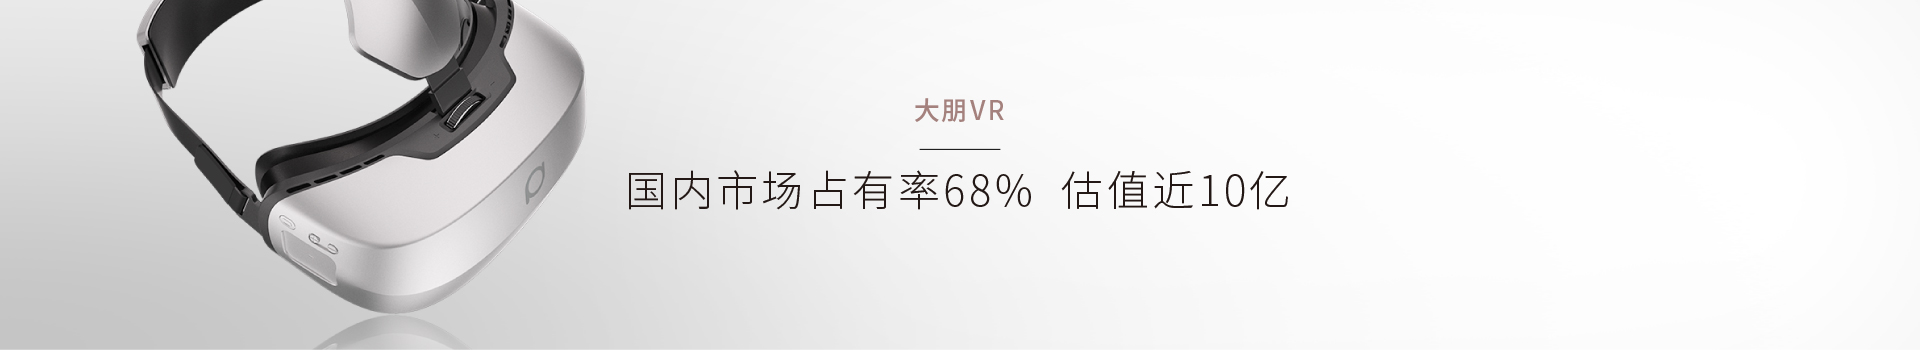 大朋VR经典营销案例